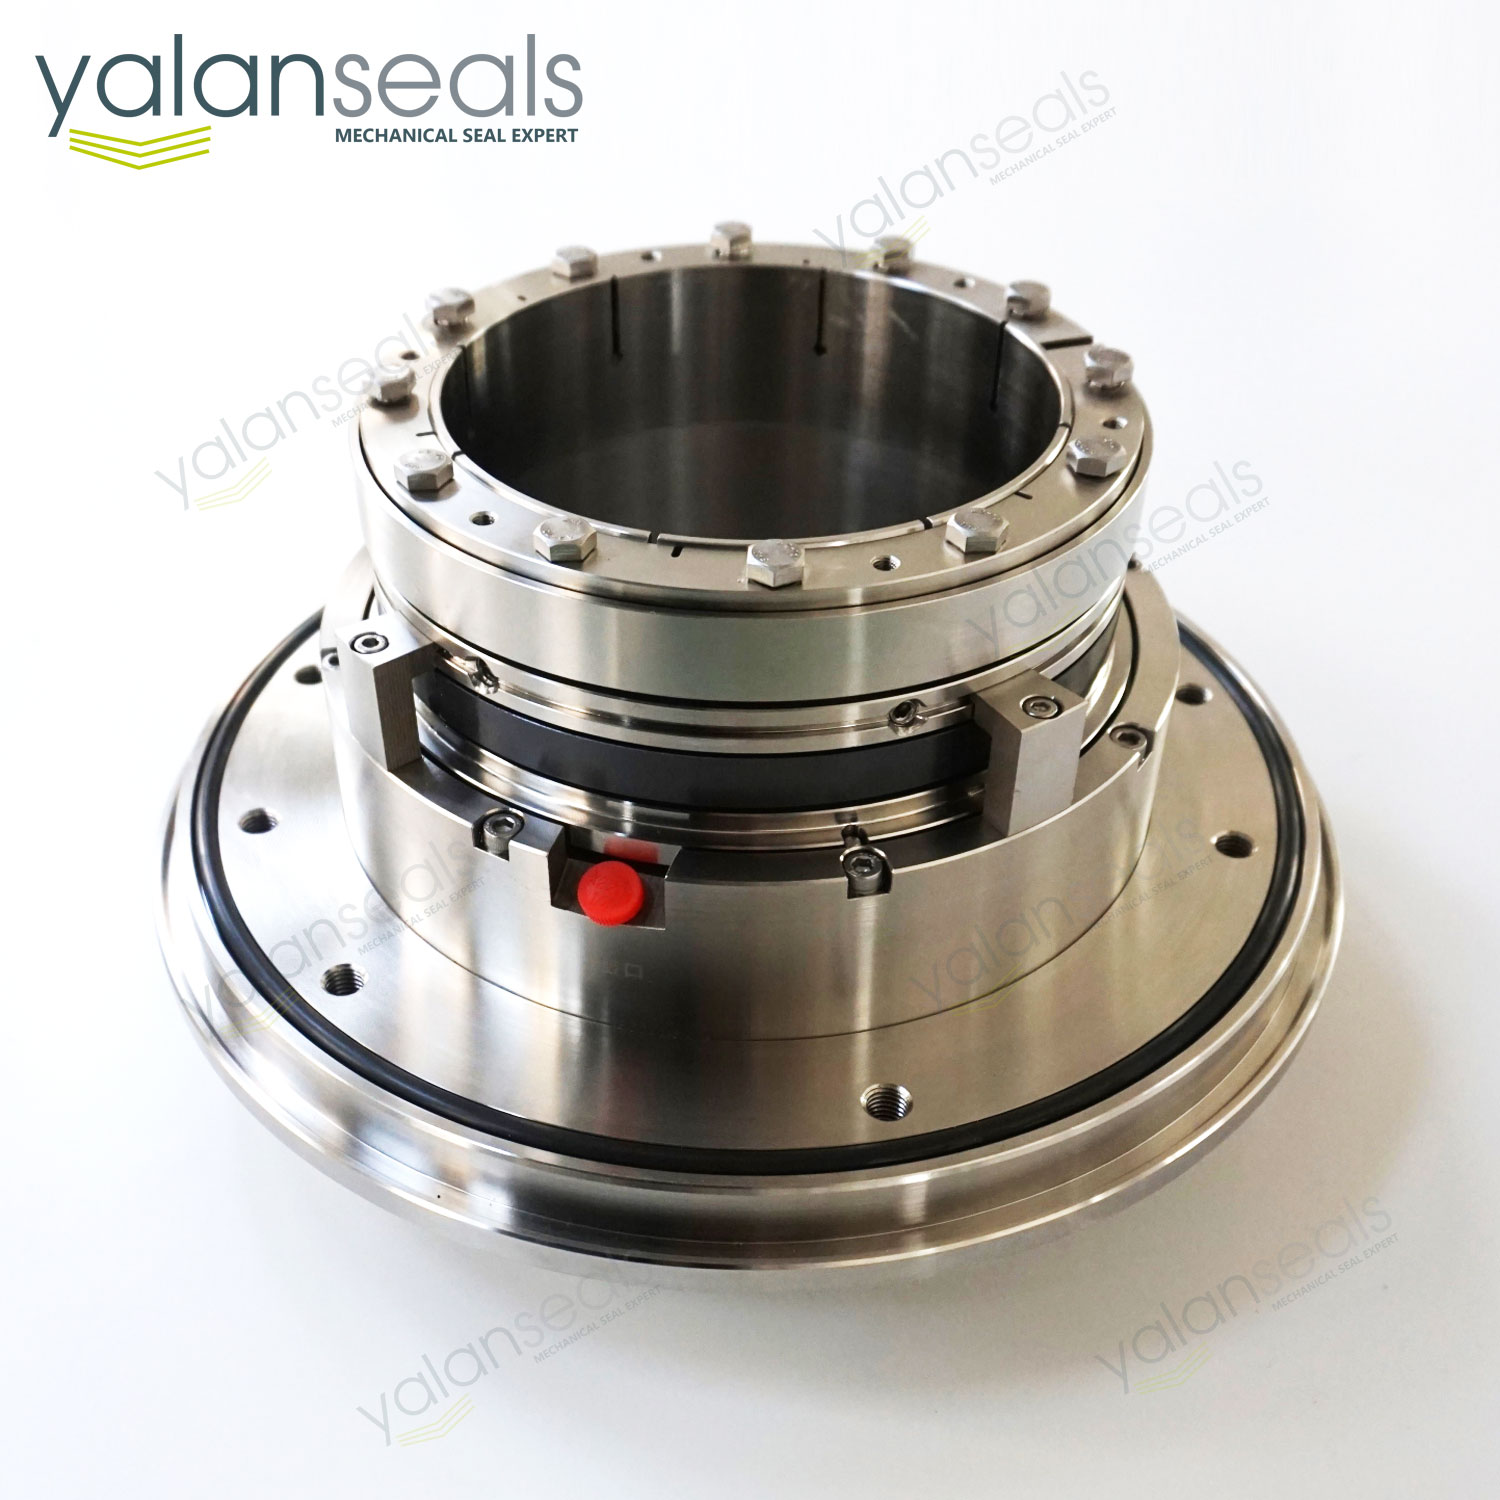 YALAN TLJ-D2 Double Cartridge Mechanical Seal for Salt Slurry Pumps, Paper Pulp Pumps and Desulphurization Pumps